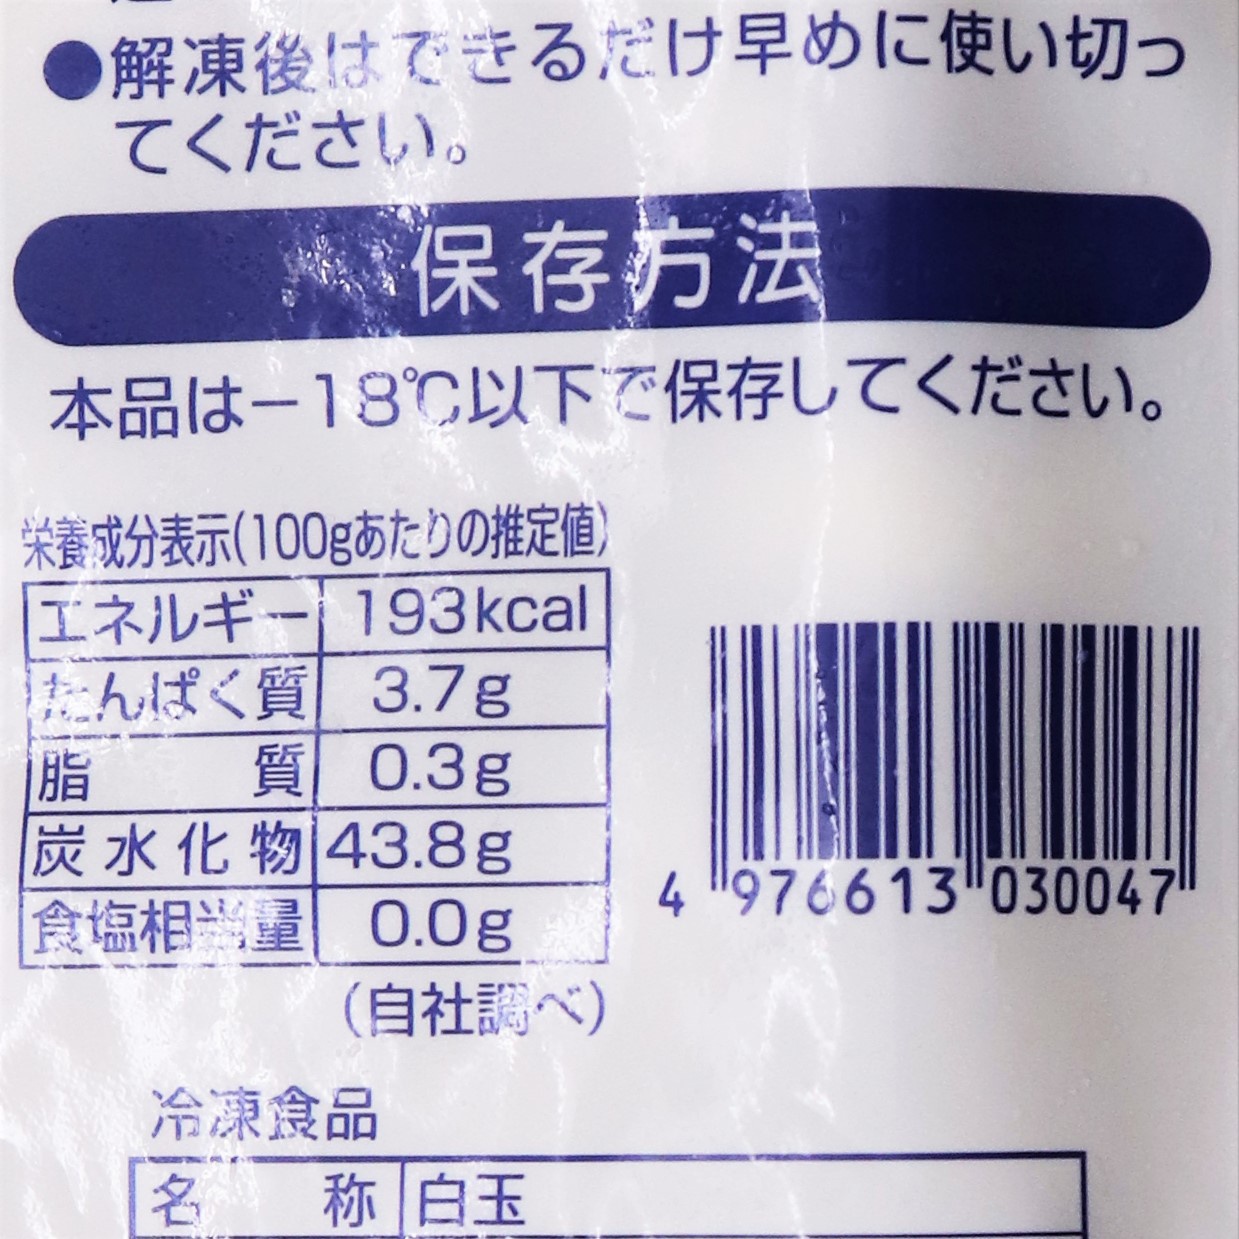 【業務用】火乃国食品工業 冷凍白玉 1kg